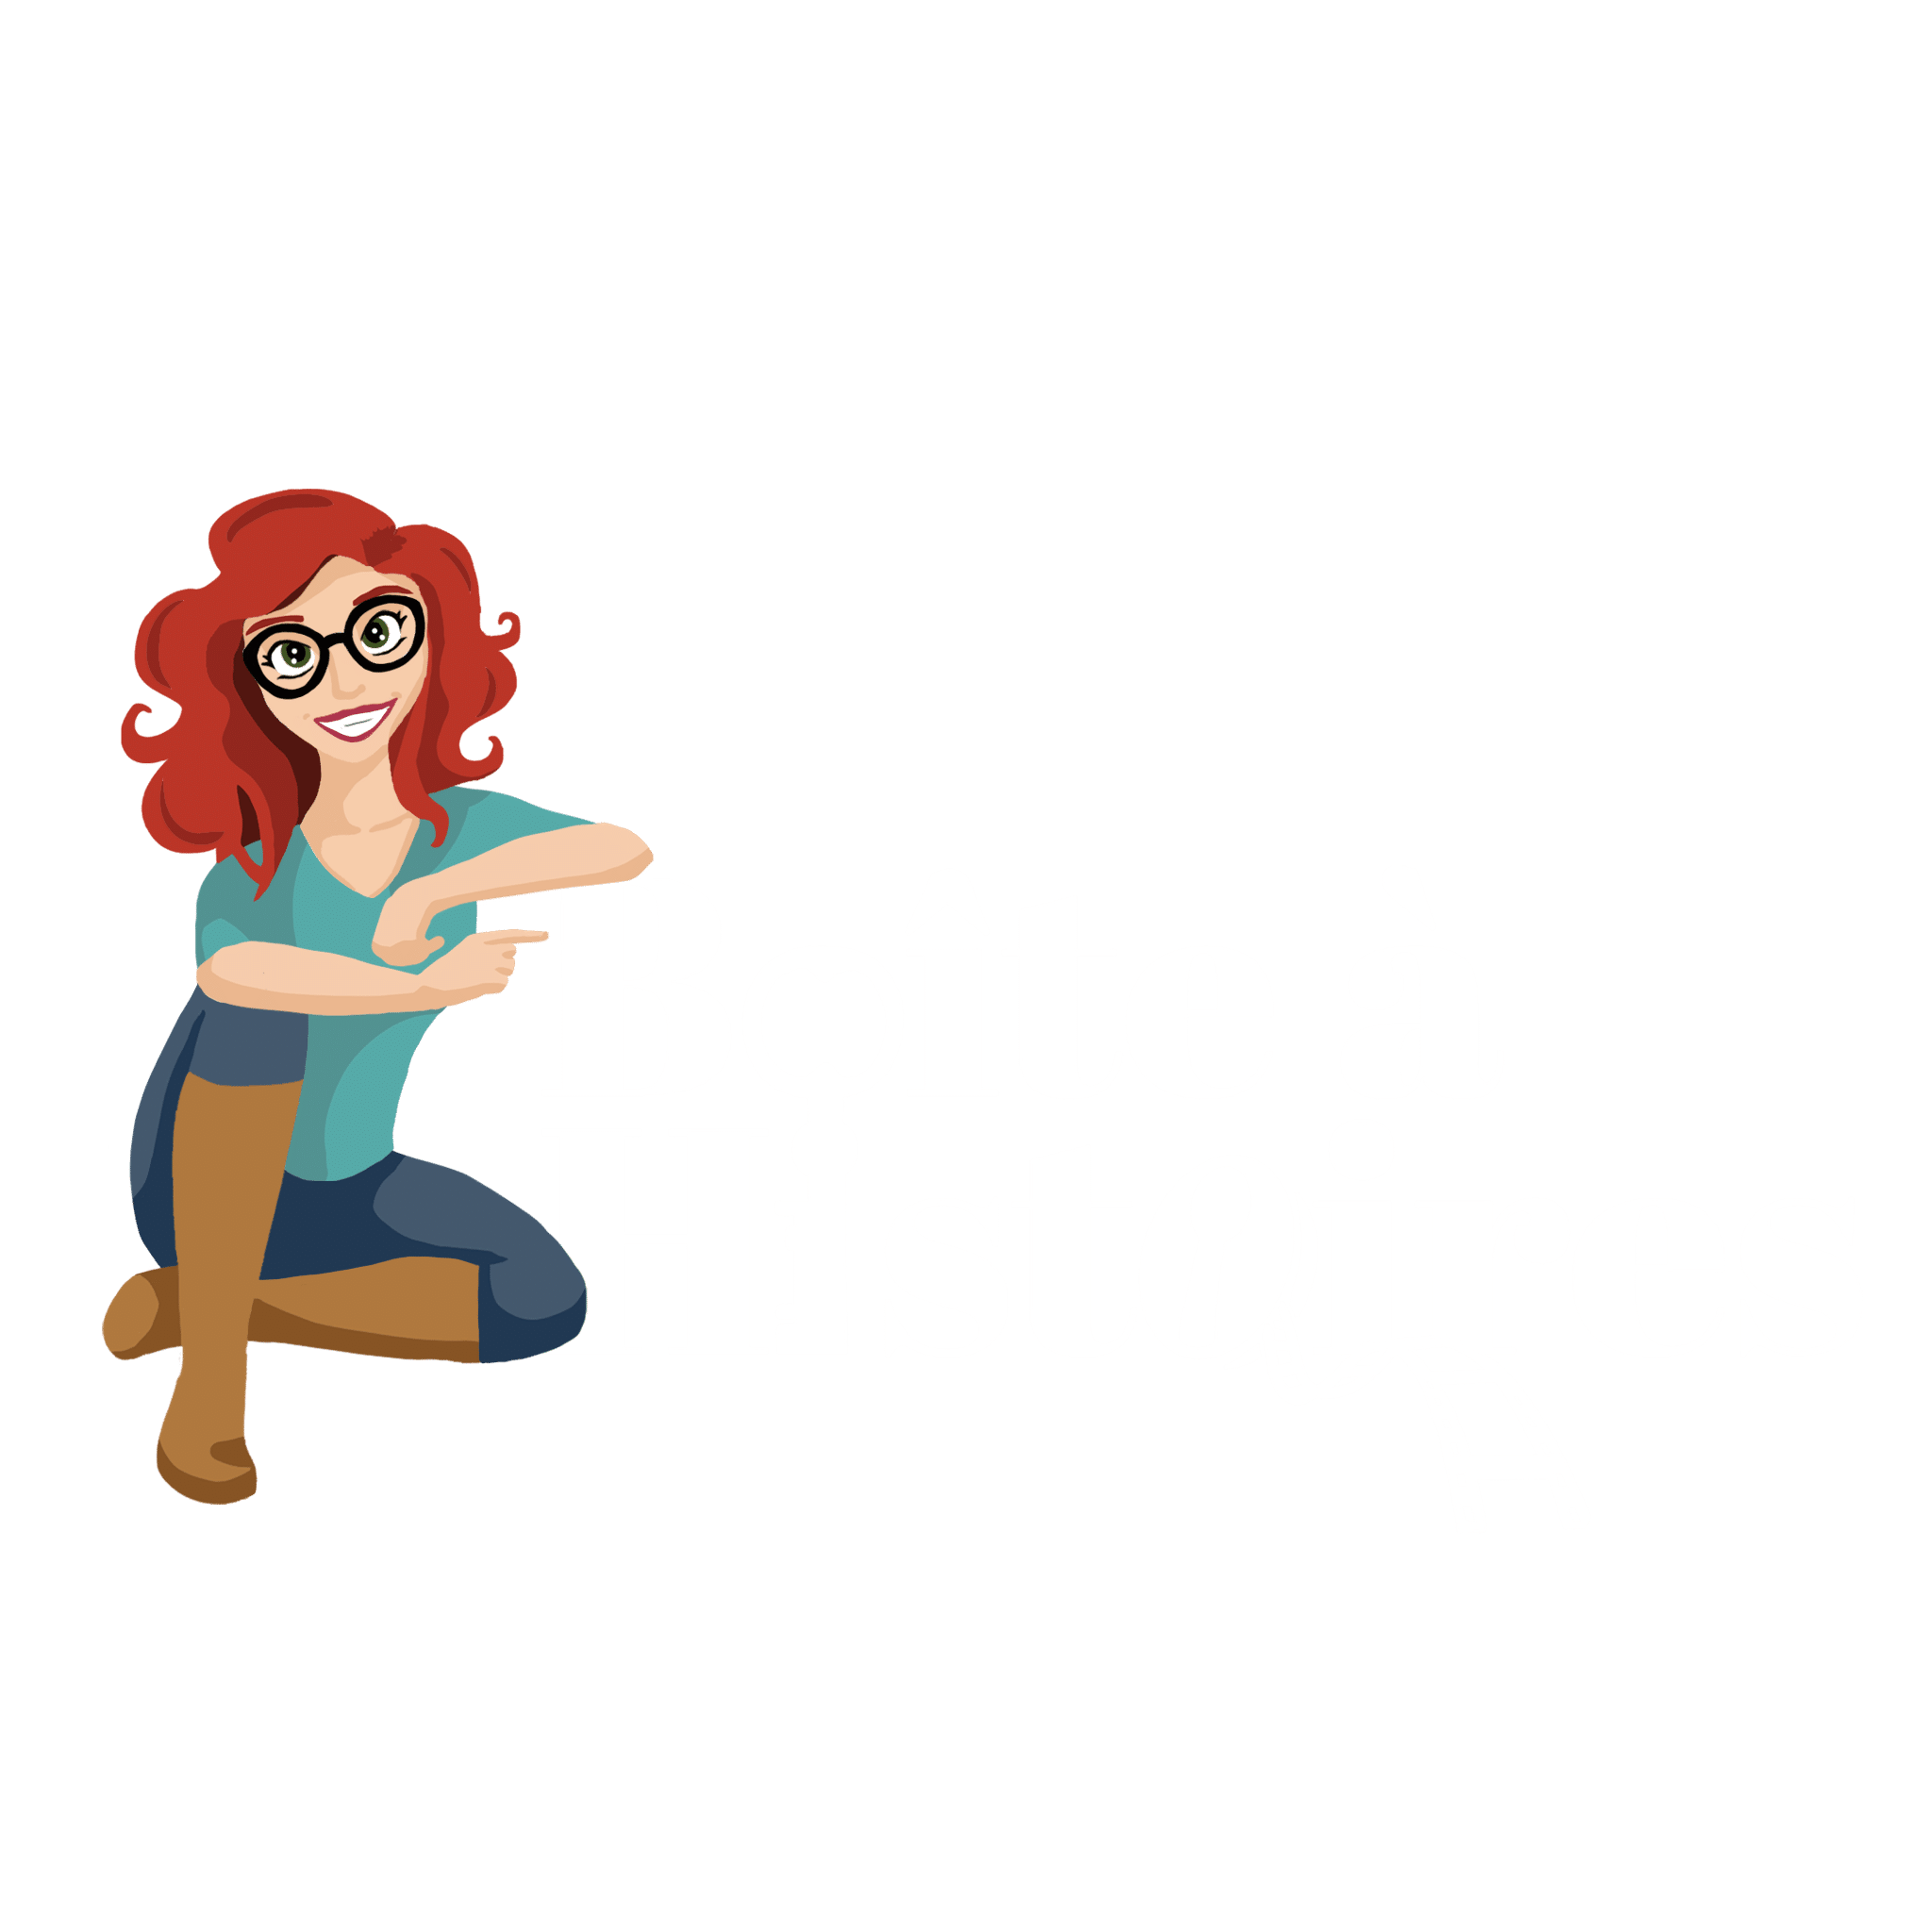 Boîte à histoires - Logo blanc : Le logo est une illustration d'une jeune femme rousse dont le bras repose sur le texte Boîte à Histoires.